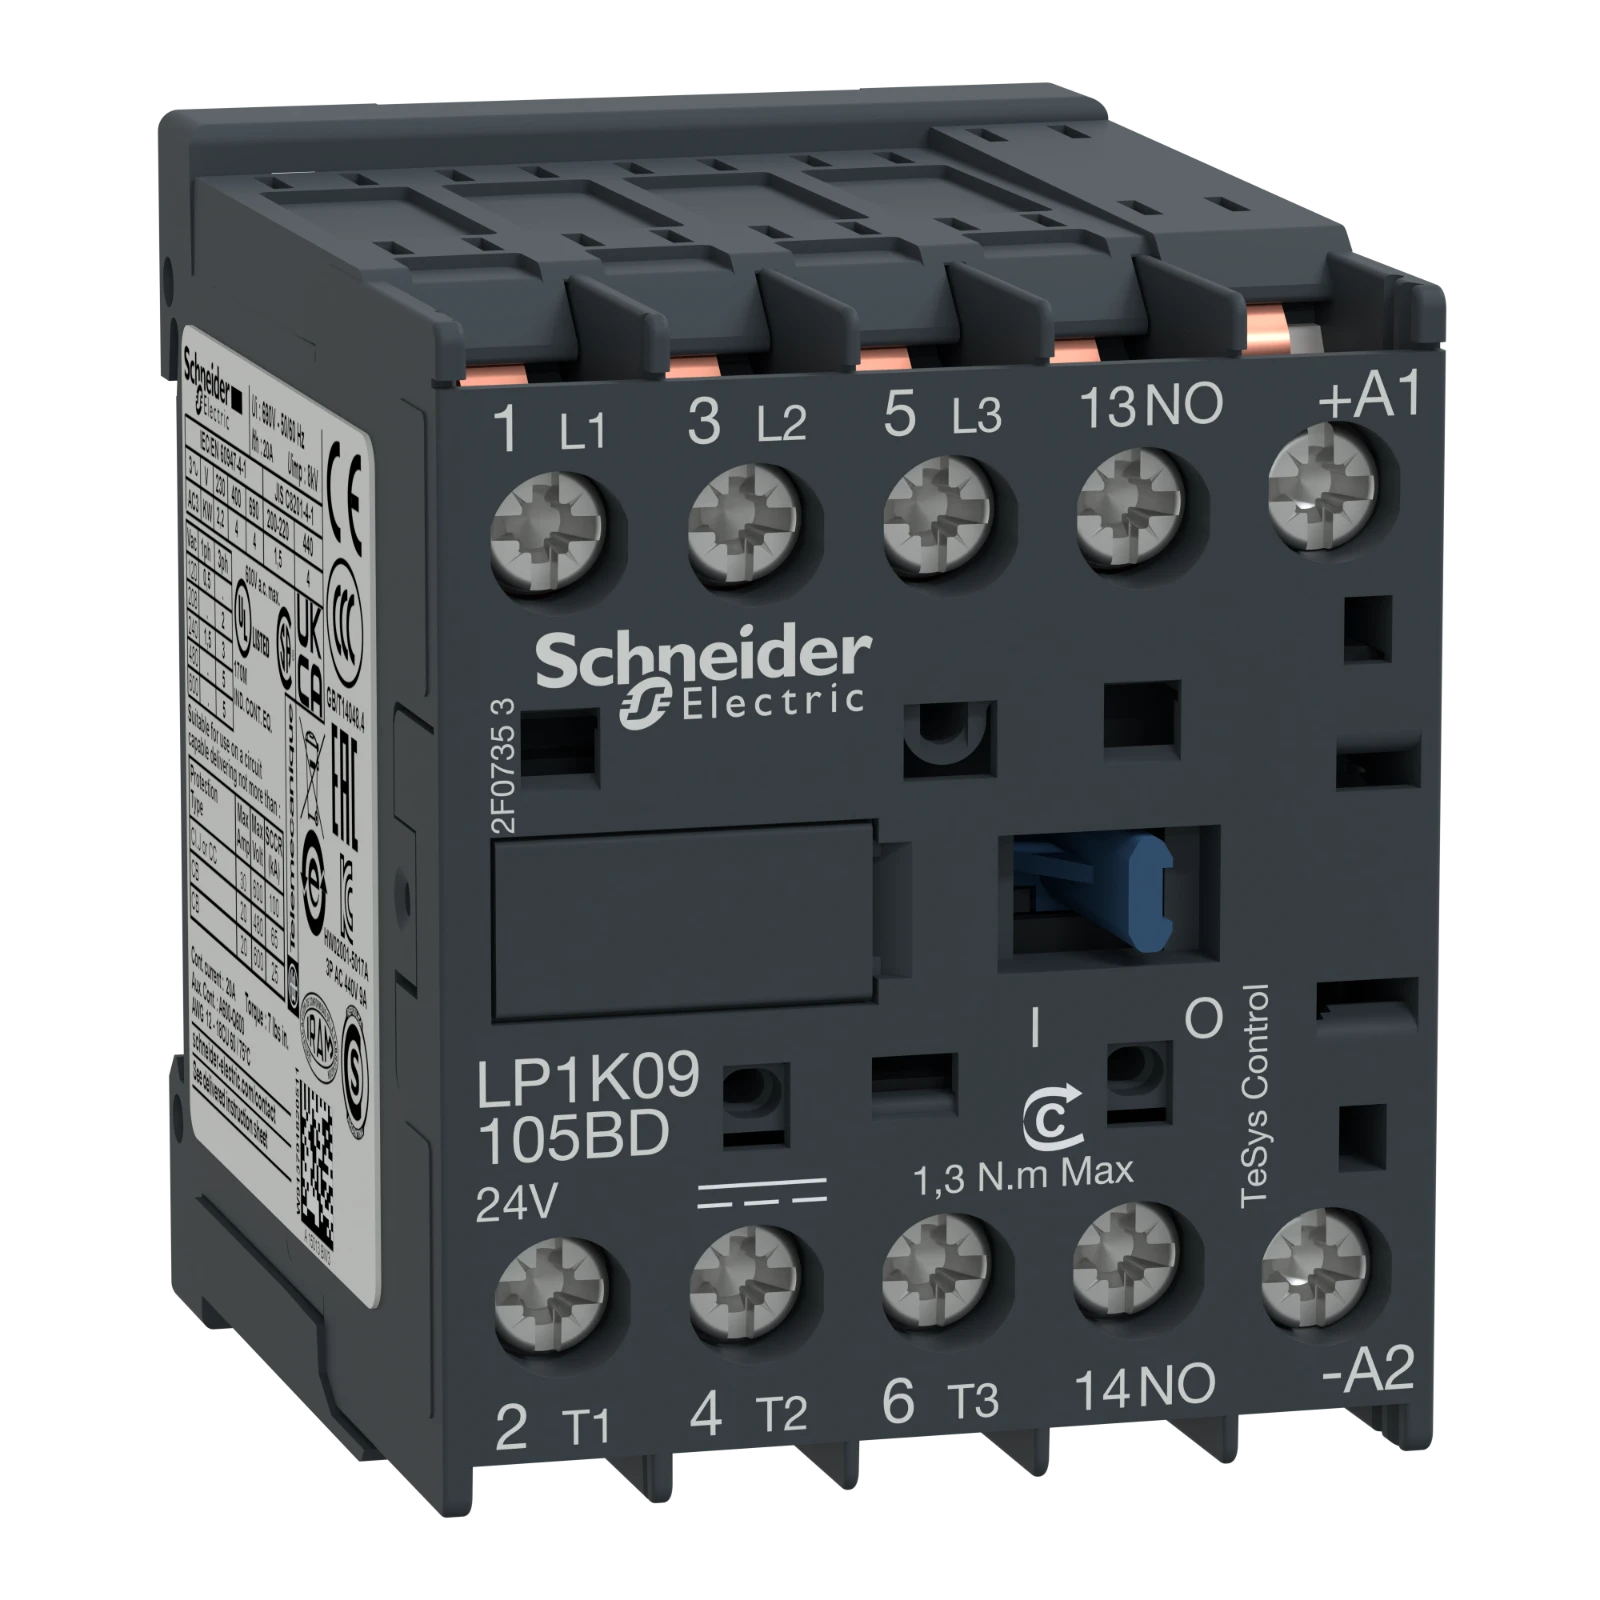 1195685 - Schneider Electric LP1K09105BD